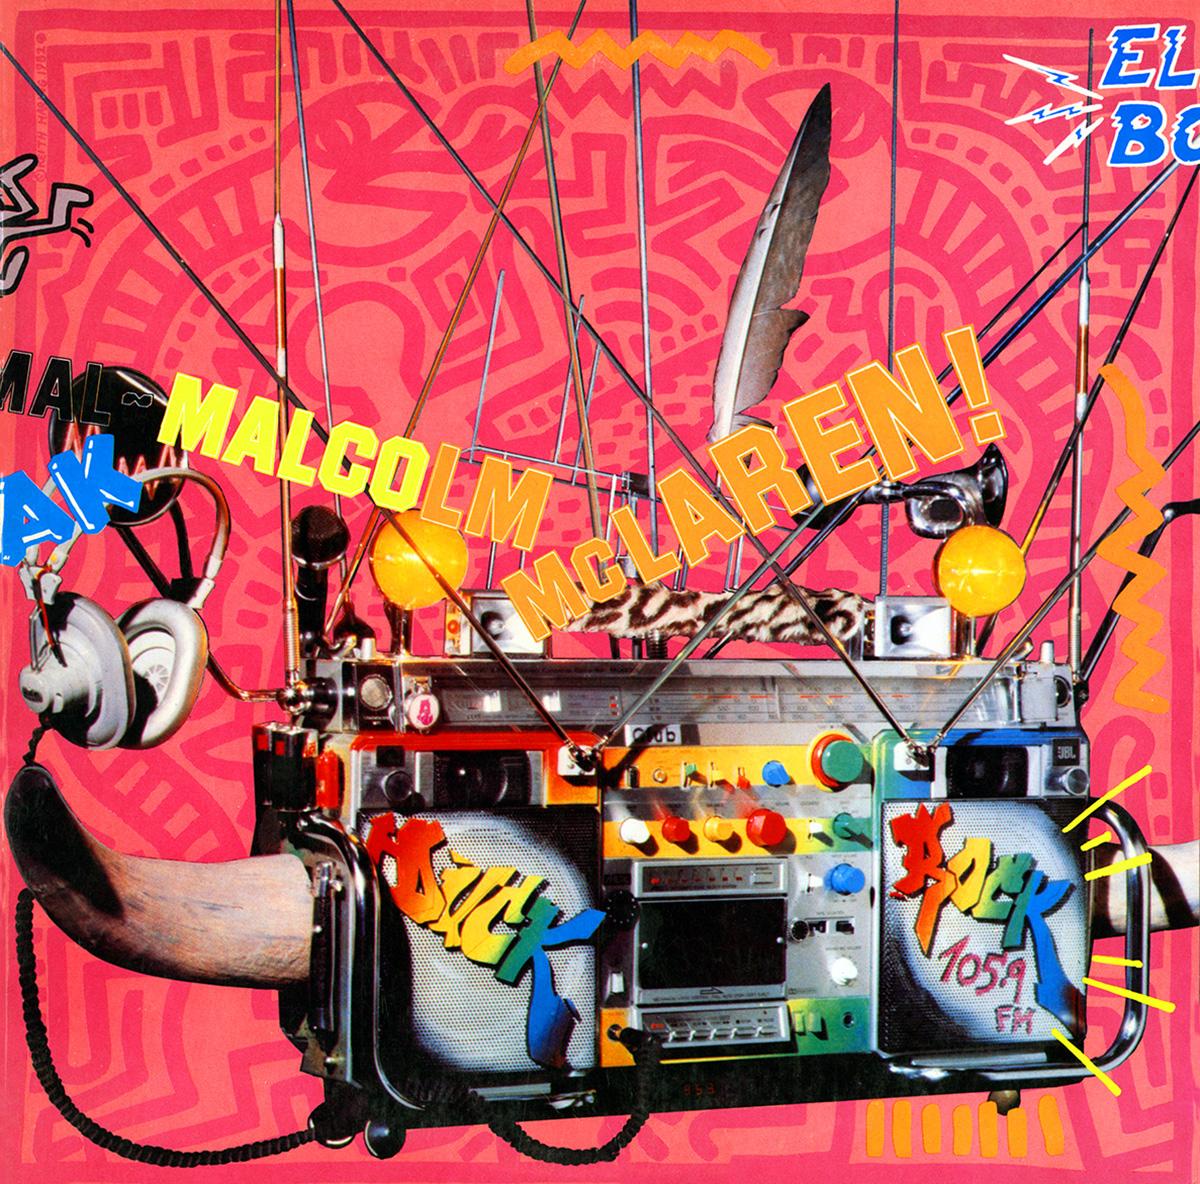 Pochette de disque vintage de Keith Haring, 1982-1987. Ensemble de 4 pièces individuelles comprenant leurs albums respectifs.

Des illustrations de Haring apparaissent sur les couvertures avant et arrière, ainsi que des inserts/livrets illustrés sur